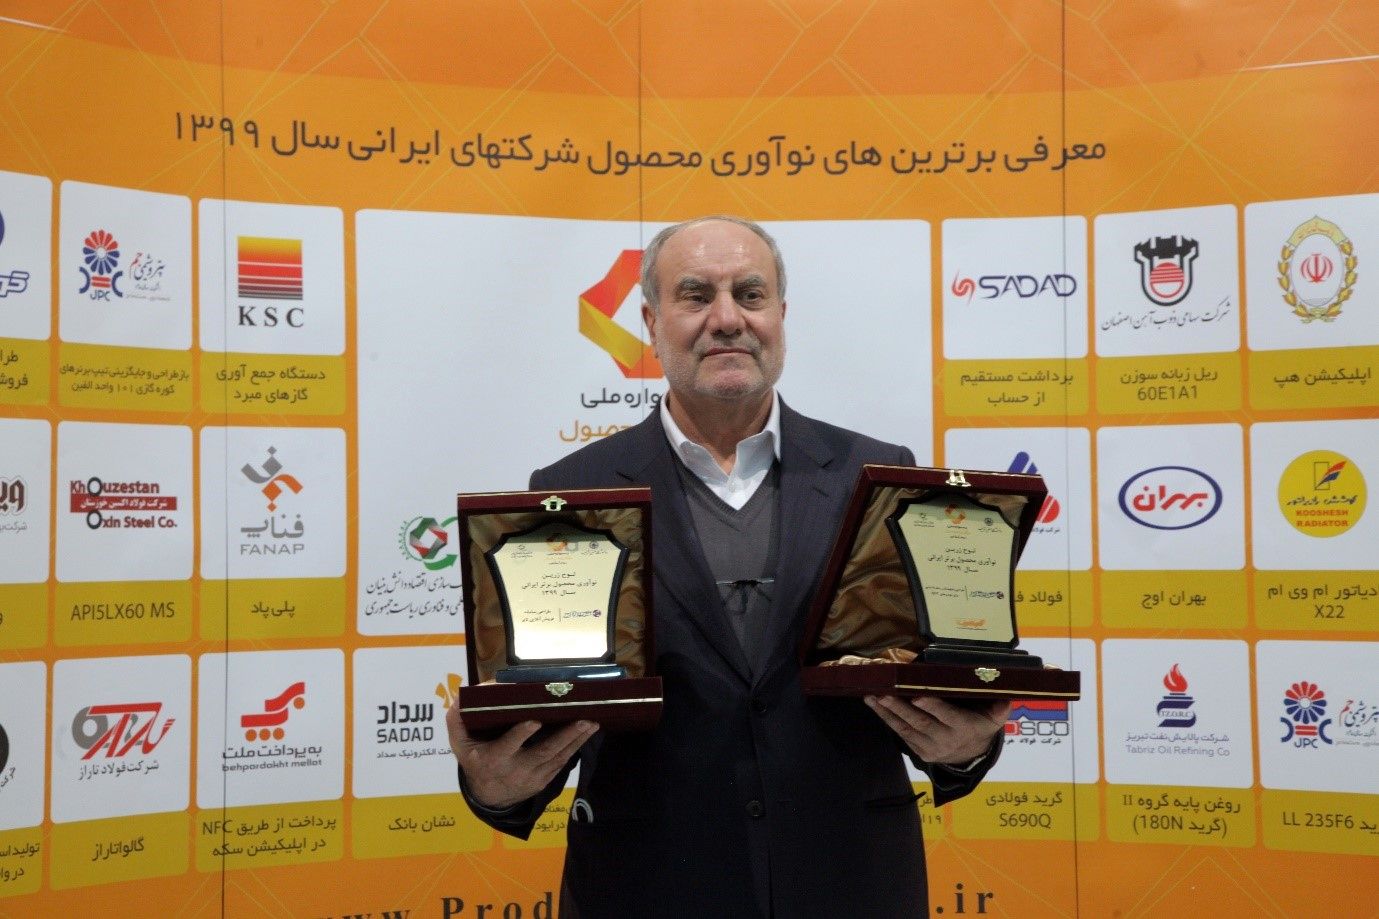 لوح وتندیس زرین نوآوری محصول برتر ایرانی به کویرتایر تعلق گرفت.